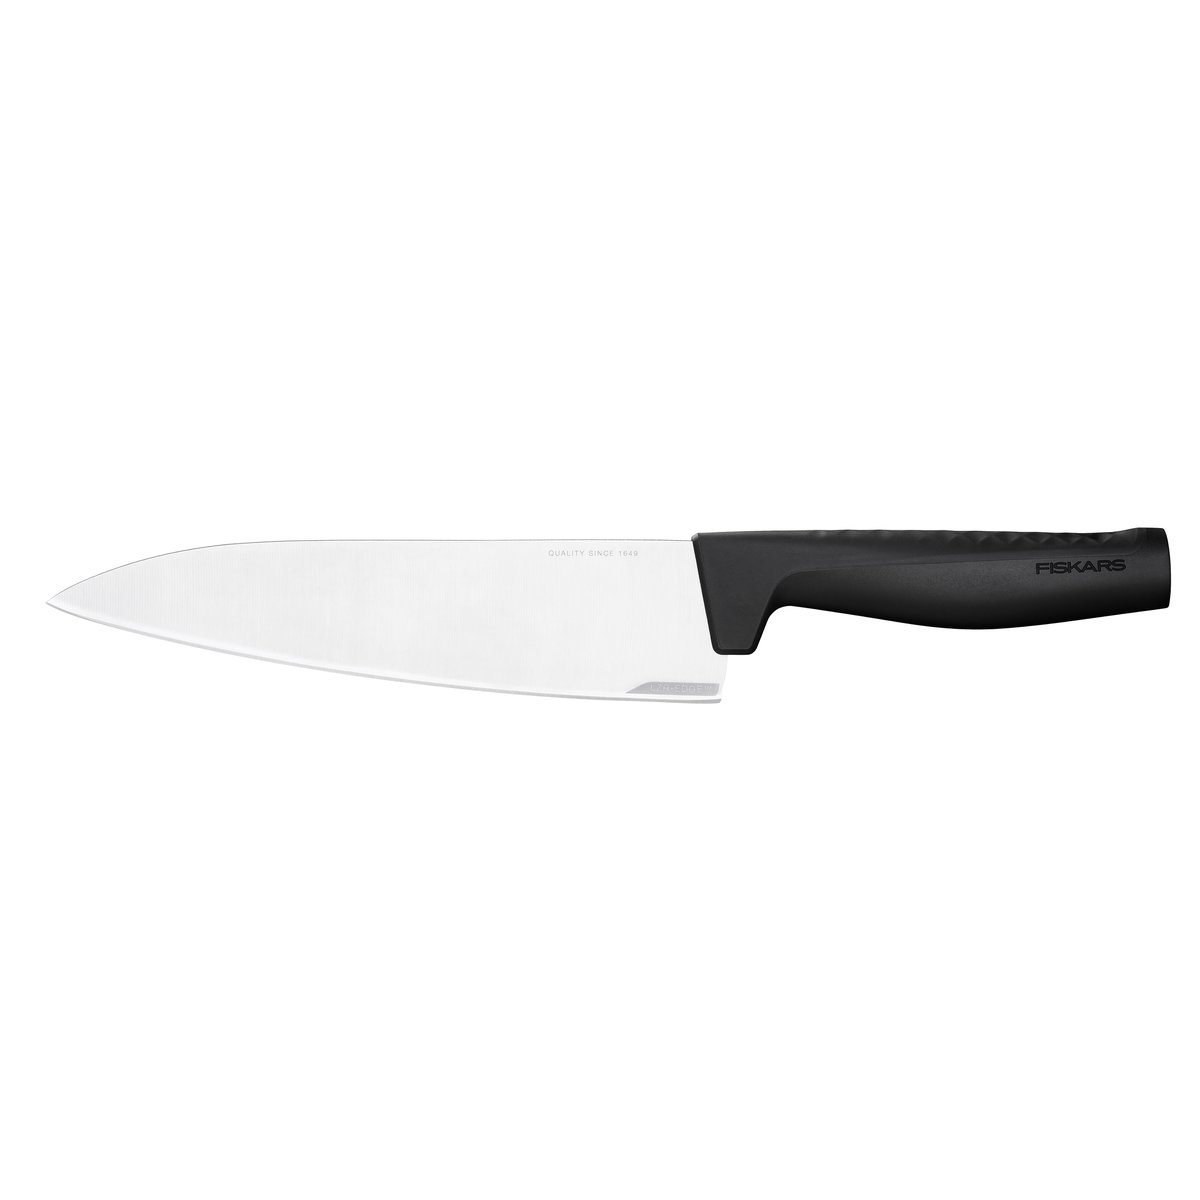 Fiskars Hard Edge kockkniv 20 cm Rostfritt stål